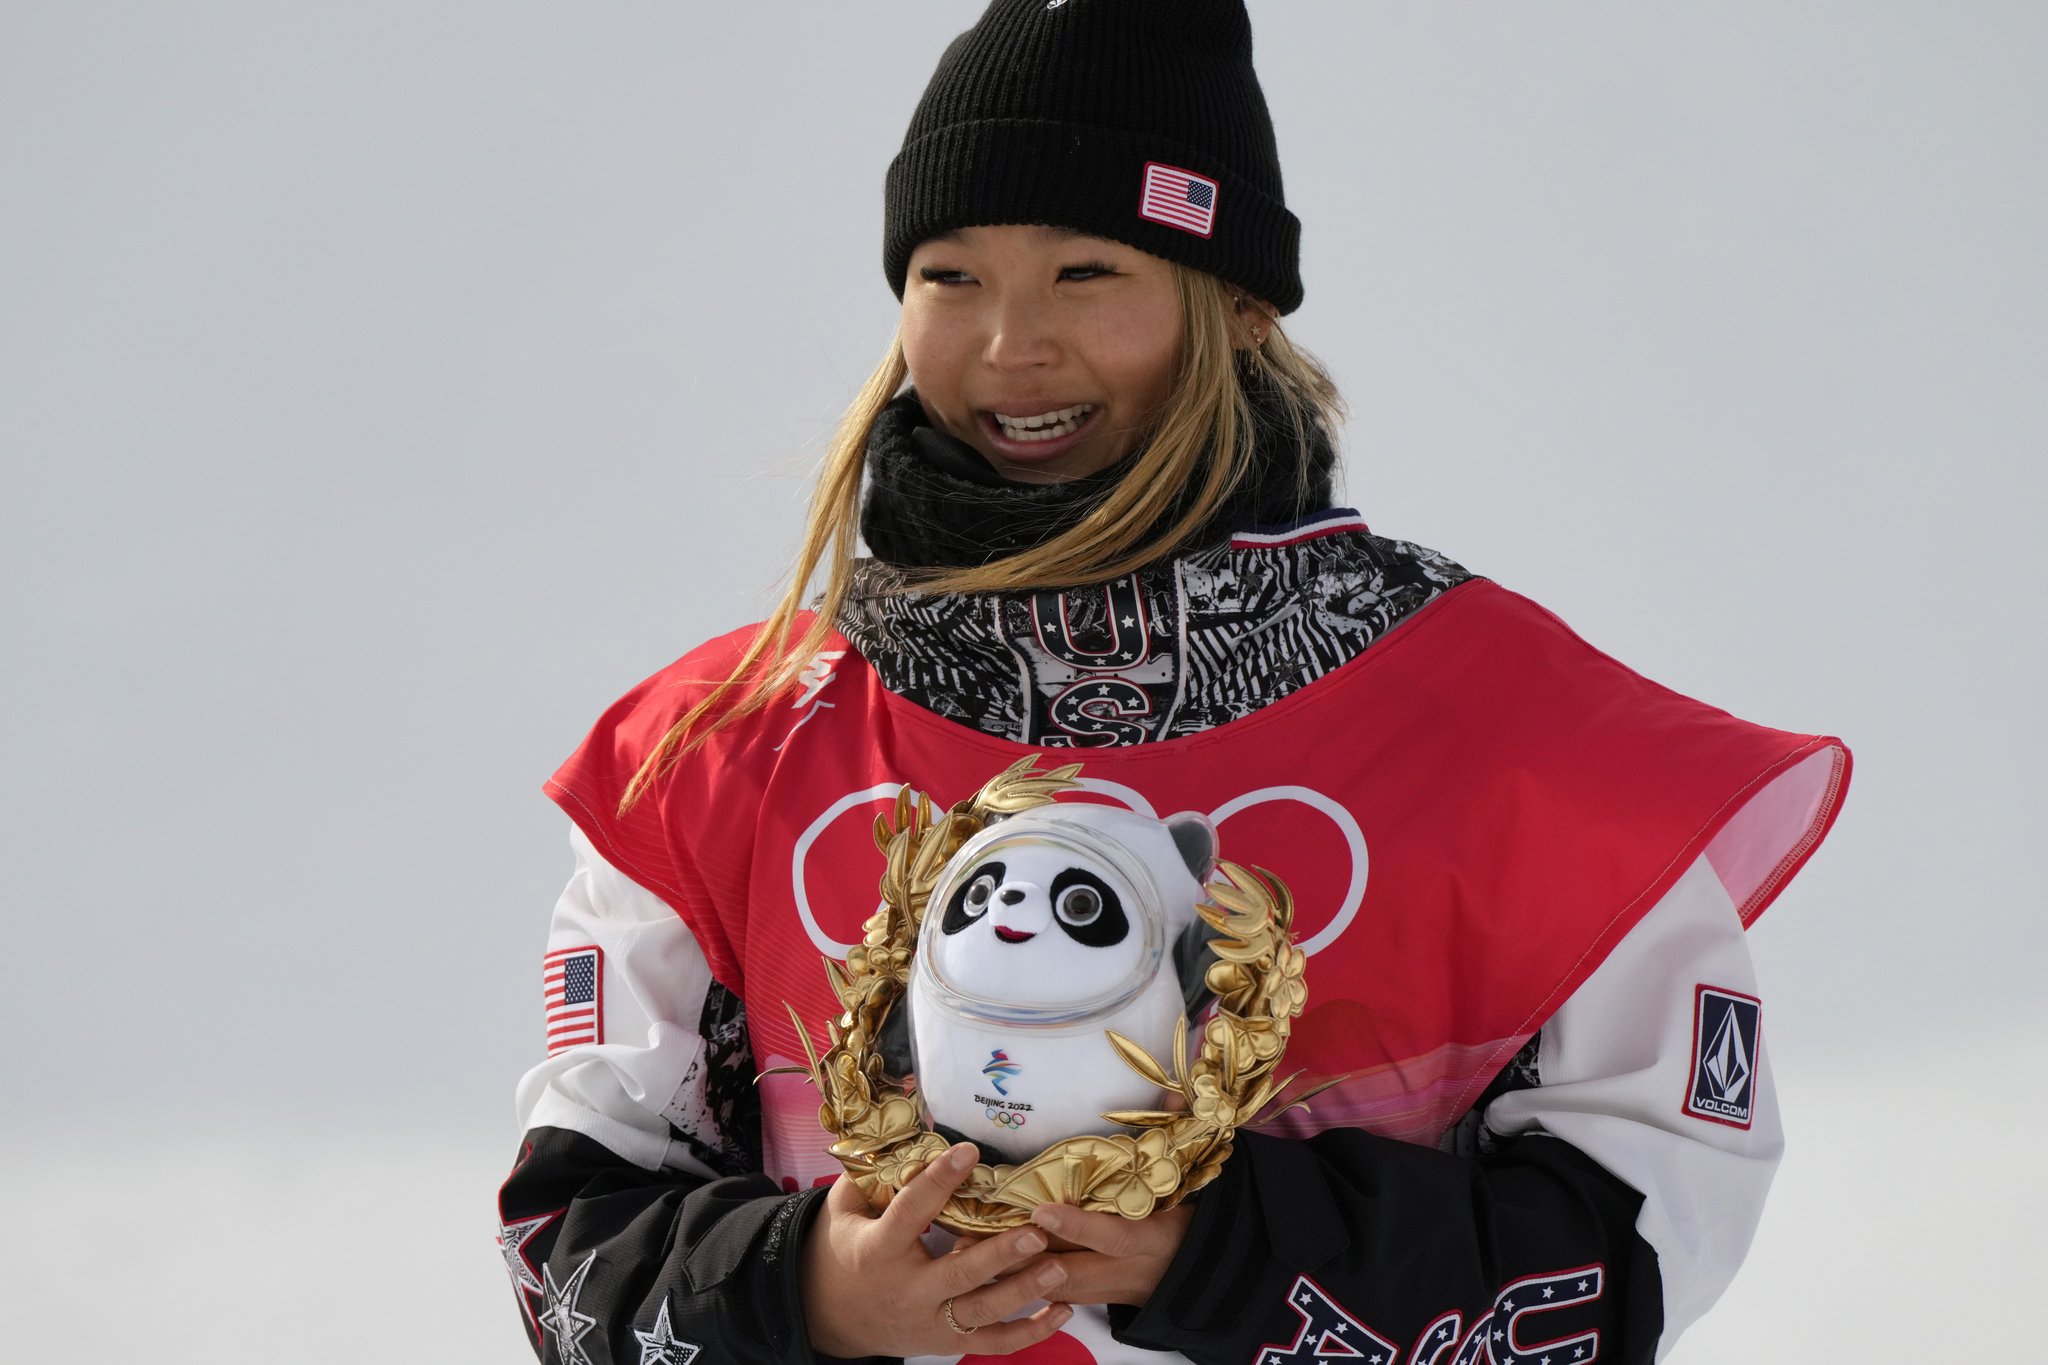 스노보드 여자 하프파이프 올림픽 2연패를 달성한 클로이 김이 메달리스트에게 수여하는 베이징올림픽 마스코트 기념품을 들고 활짝 웃고 있다. [AP=연합뉴스]